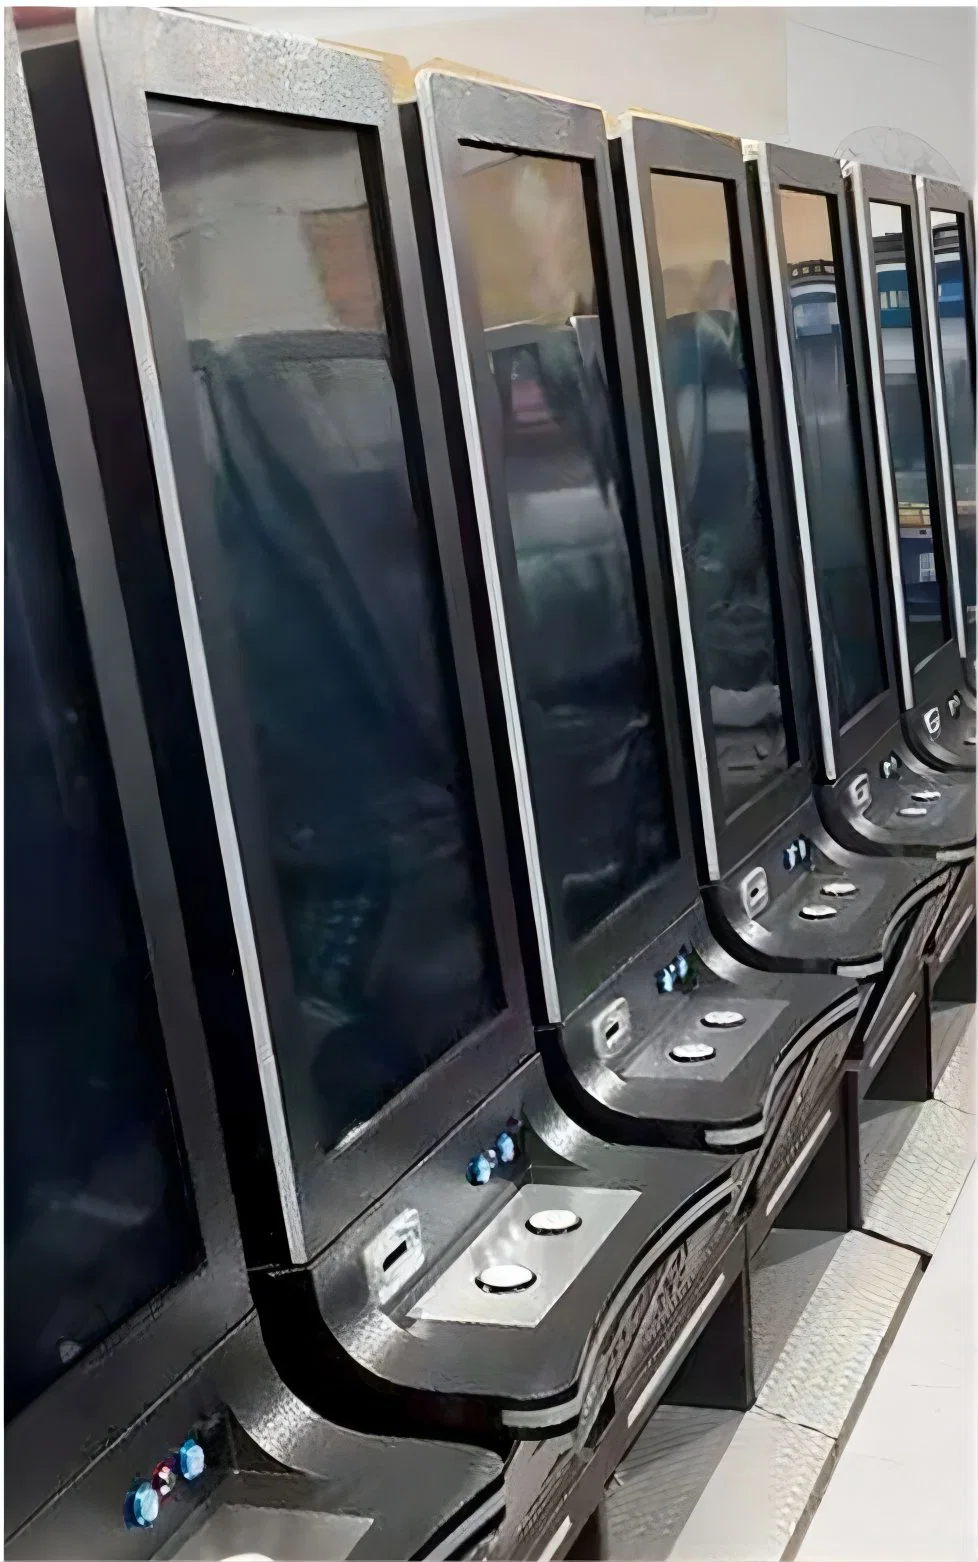 Сенсорный экран азартные игры слот лотереи аркады казино машины печатной платы управления системной платы в сборе под ключ взаимосвязи печатных плат обслуживания в Китае